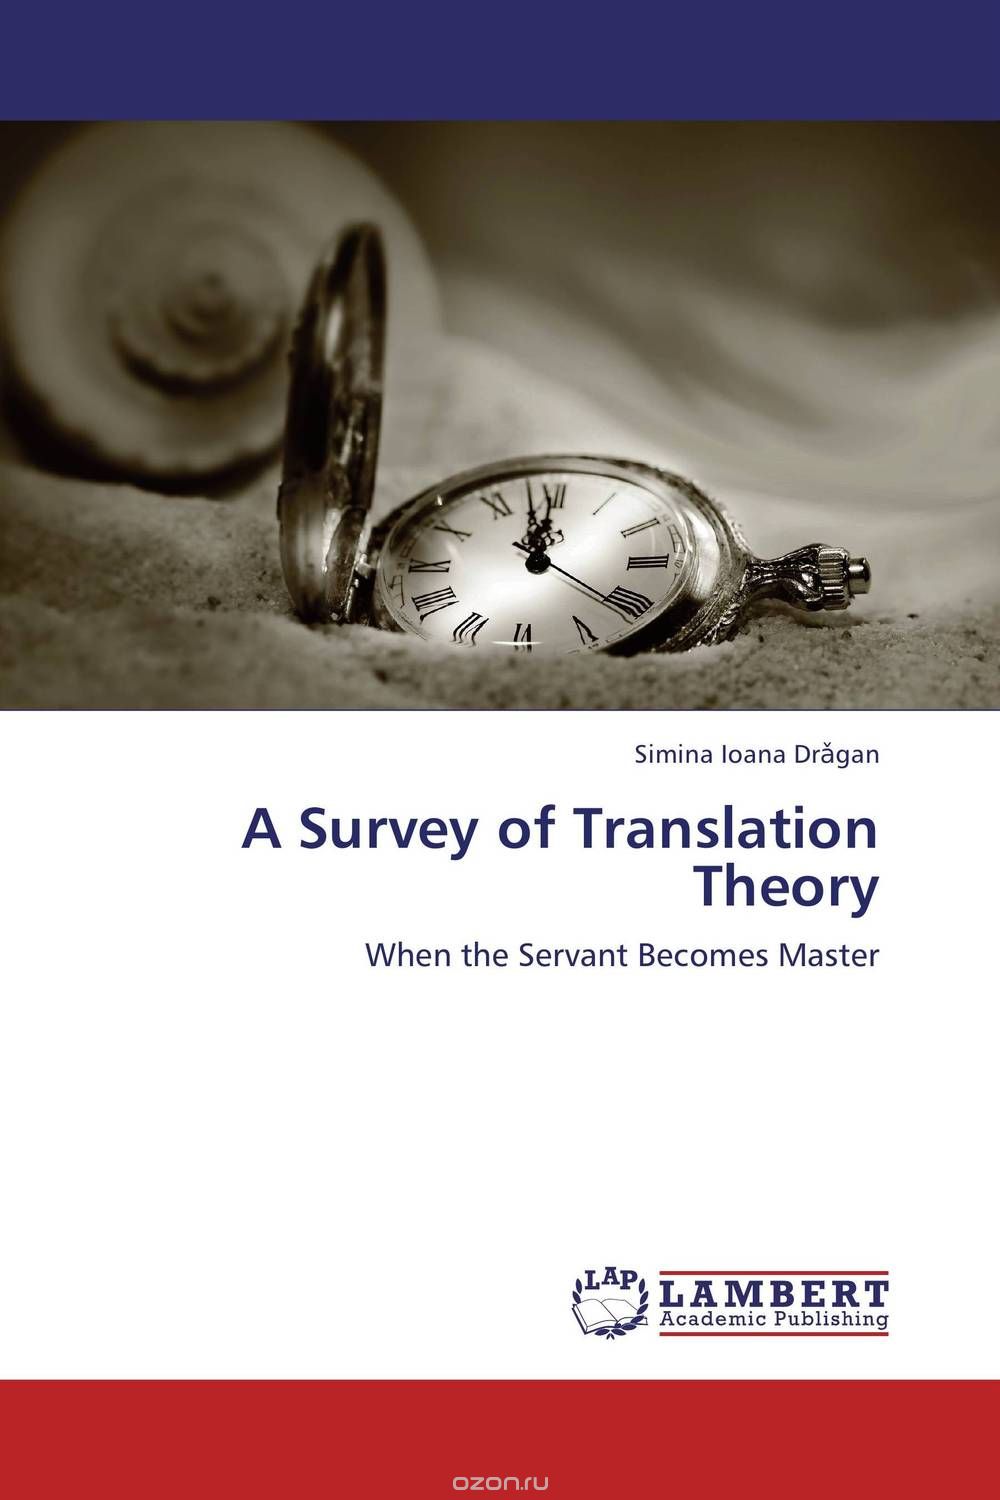 A Survey of Translation Theory